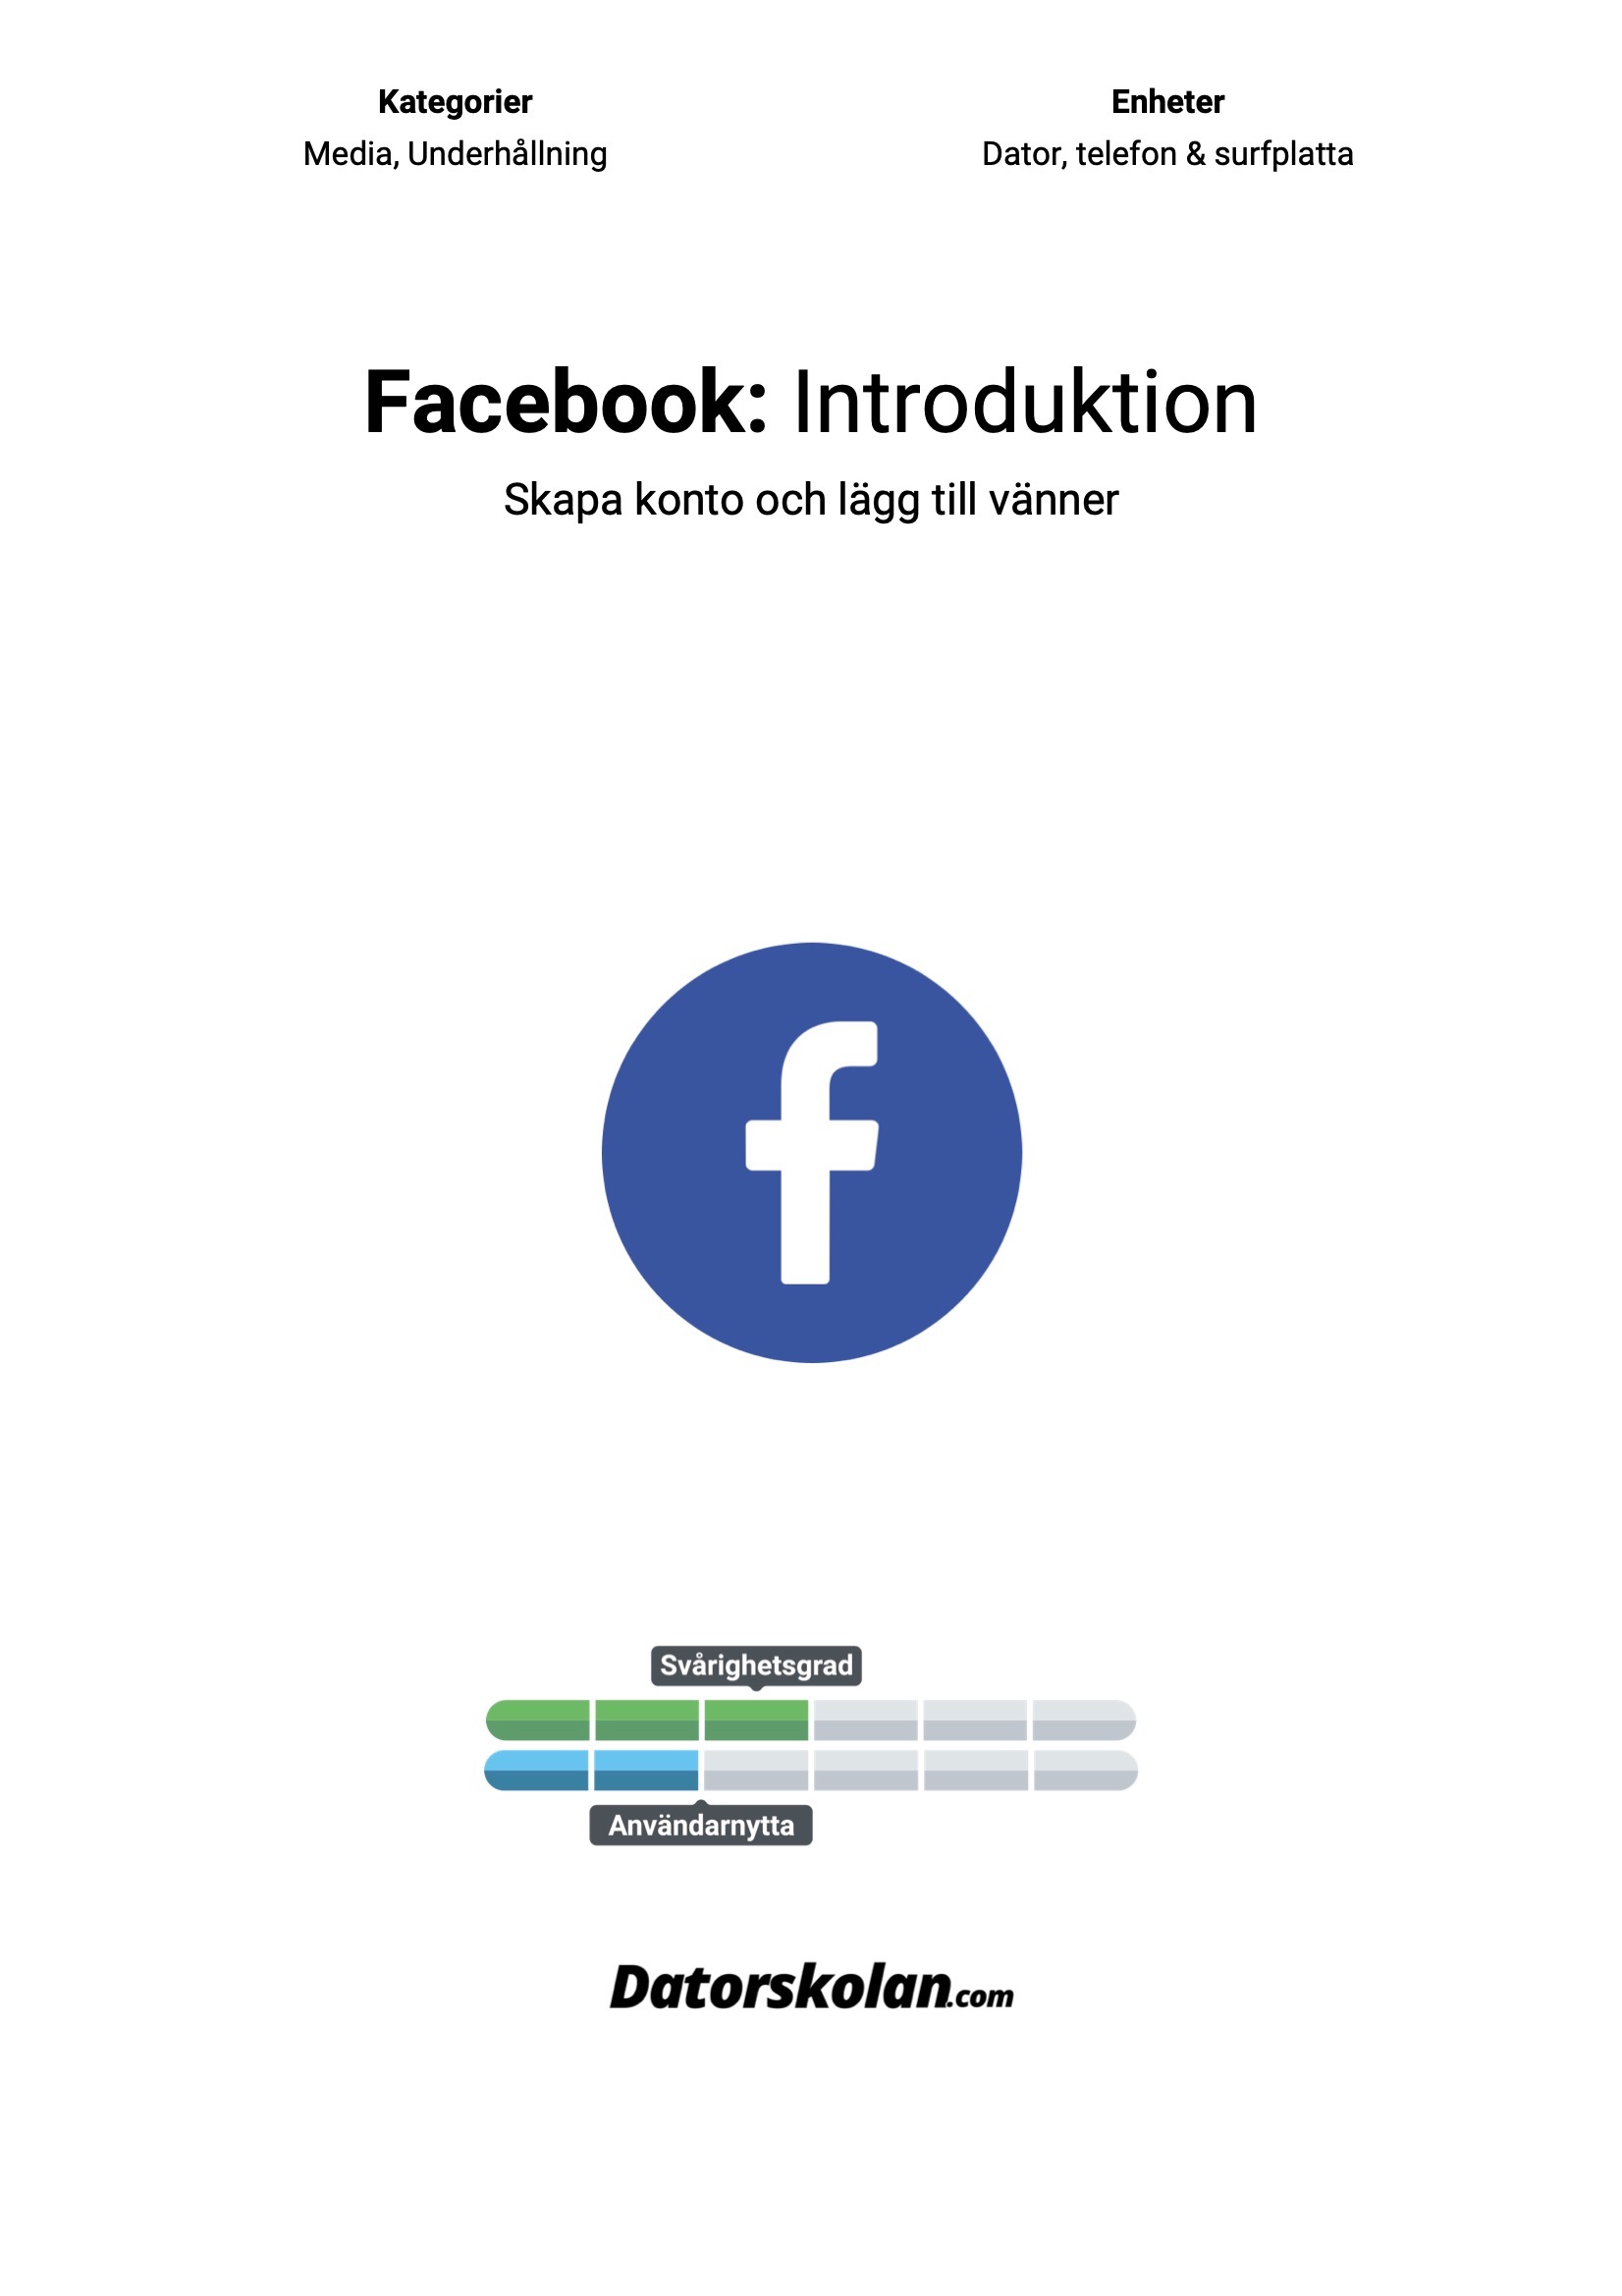 Framsidan av DigiGuiden som handlar om Facebook